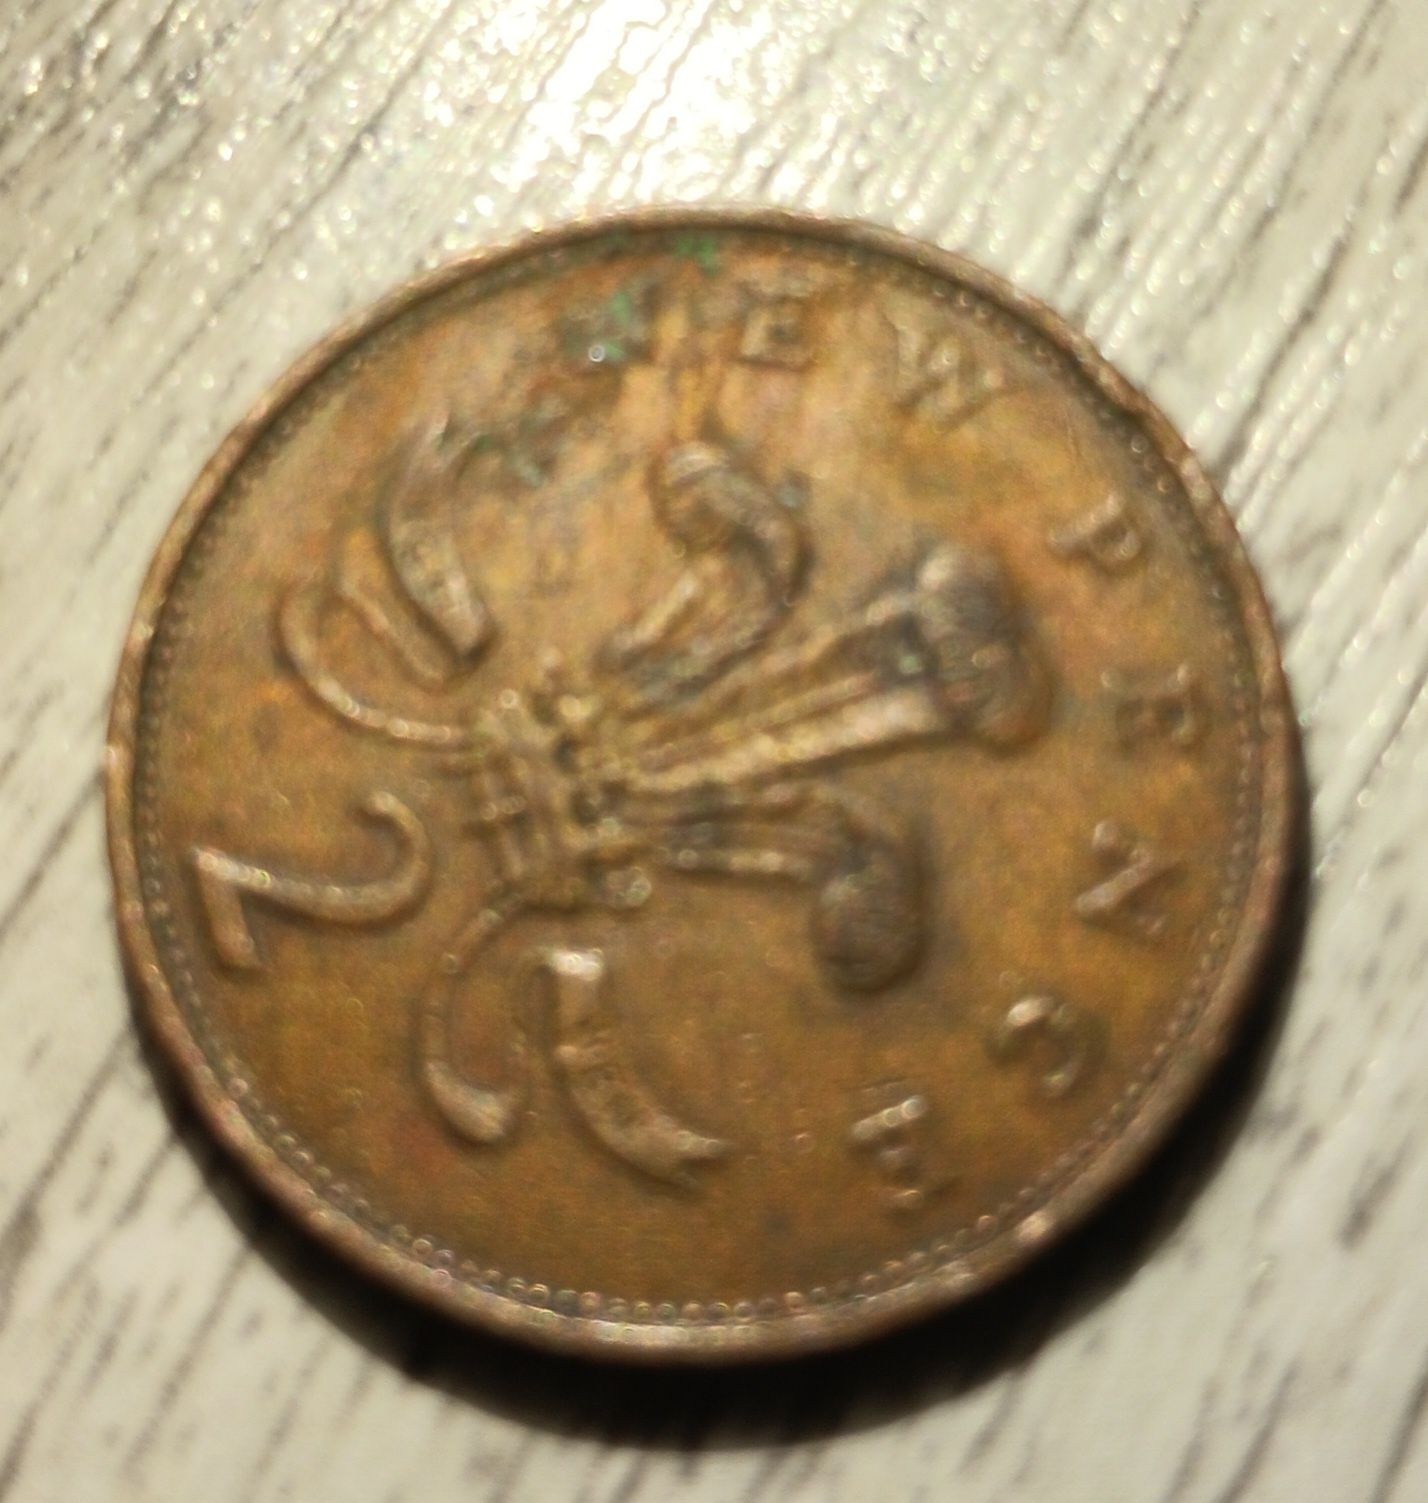 3 monede 2 pence Regina Elizabeta a||a 1971,1976 si 1978